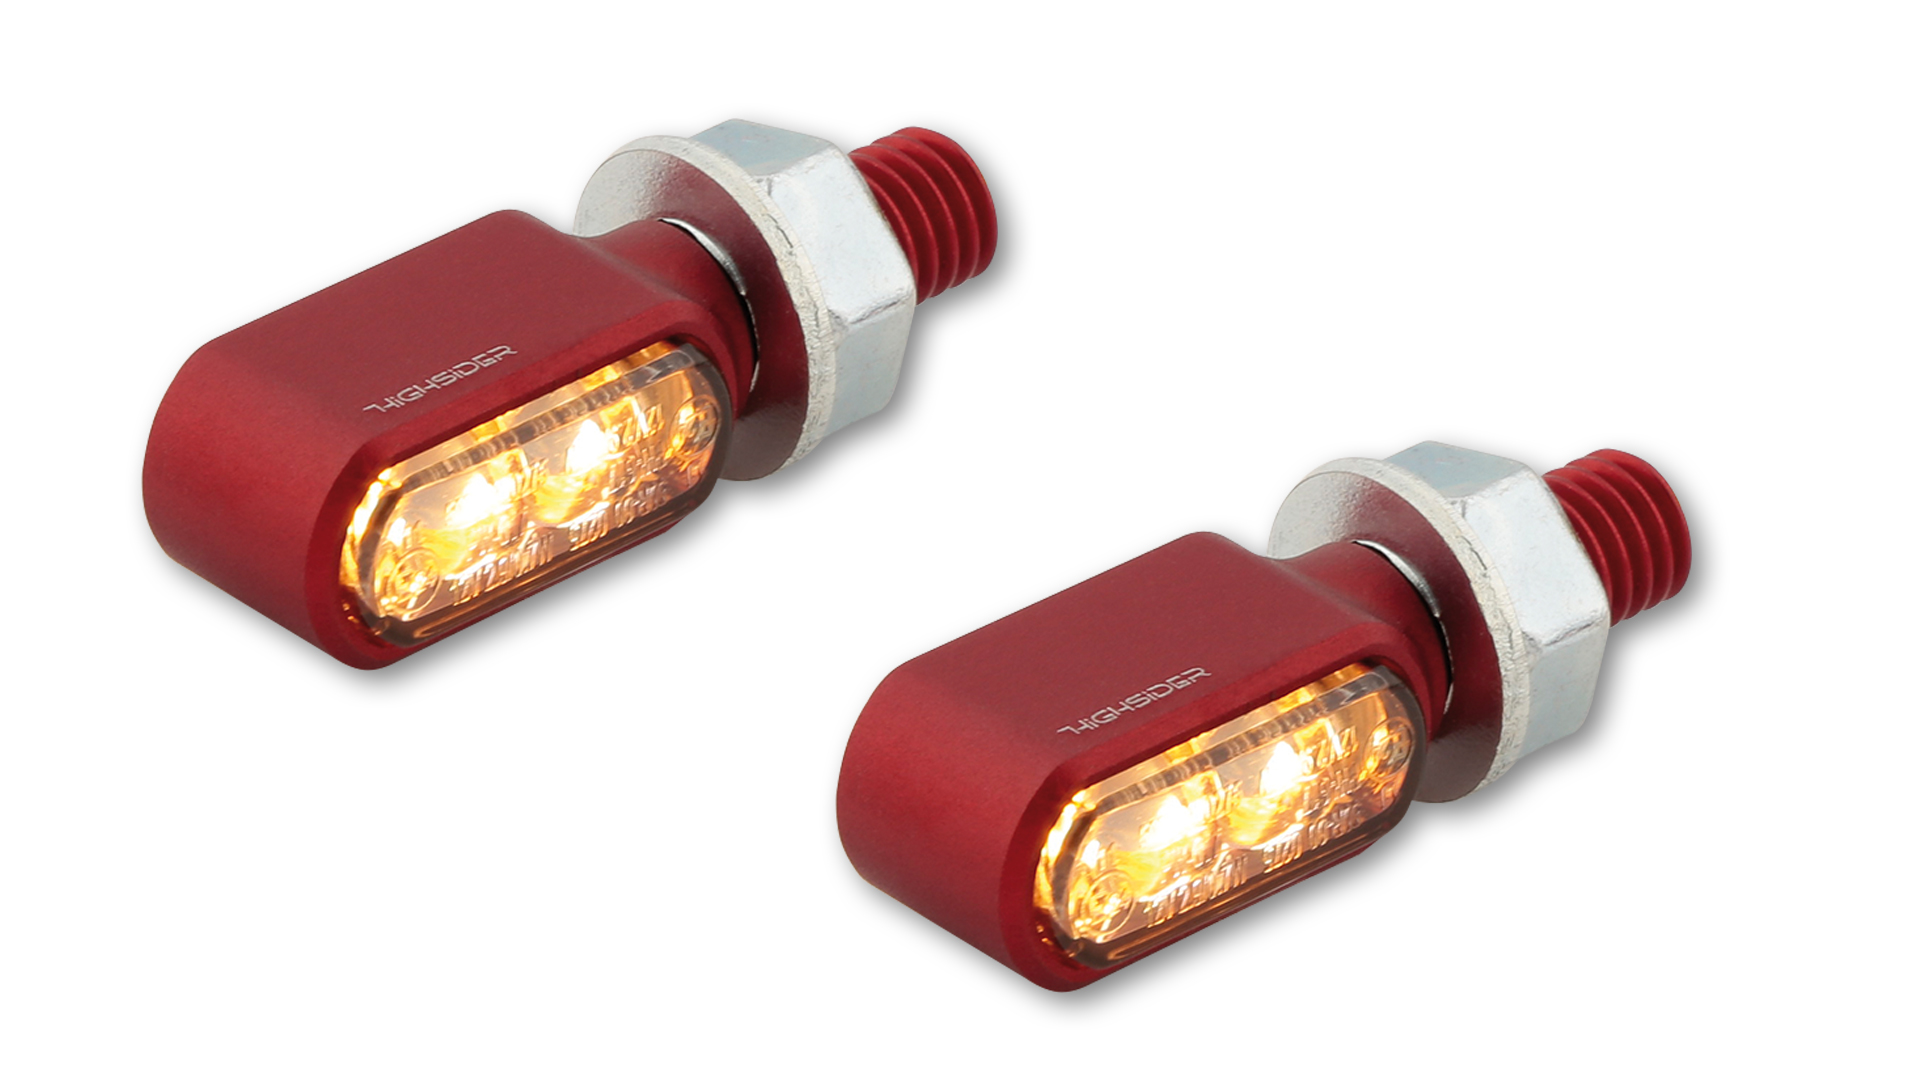 LED Blinker/Positionslicht LITTLE BRONX, getöntes Glas, E-geprüft, Paar, in verschiedenen Farben erhältlich.&ltbr&gt